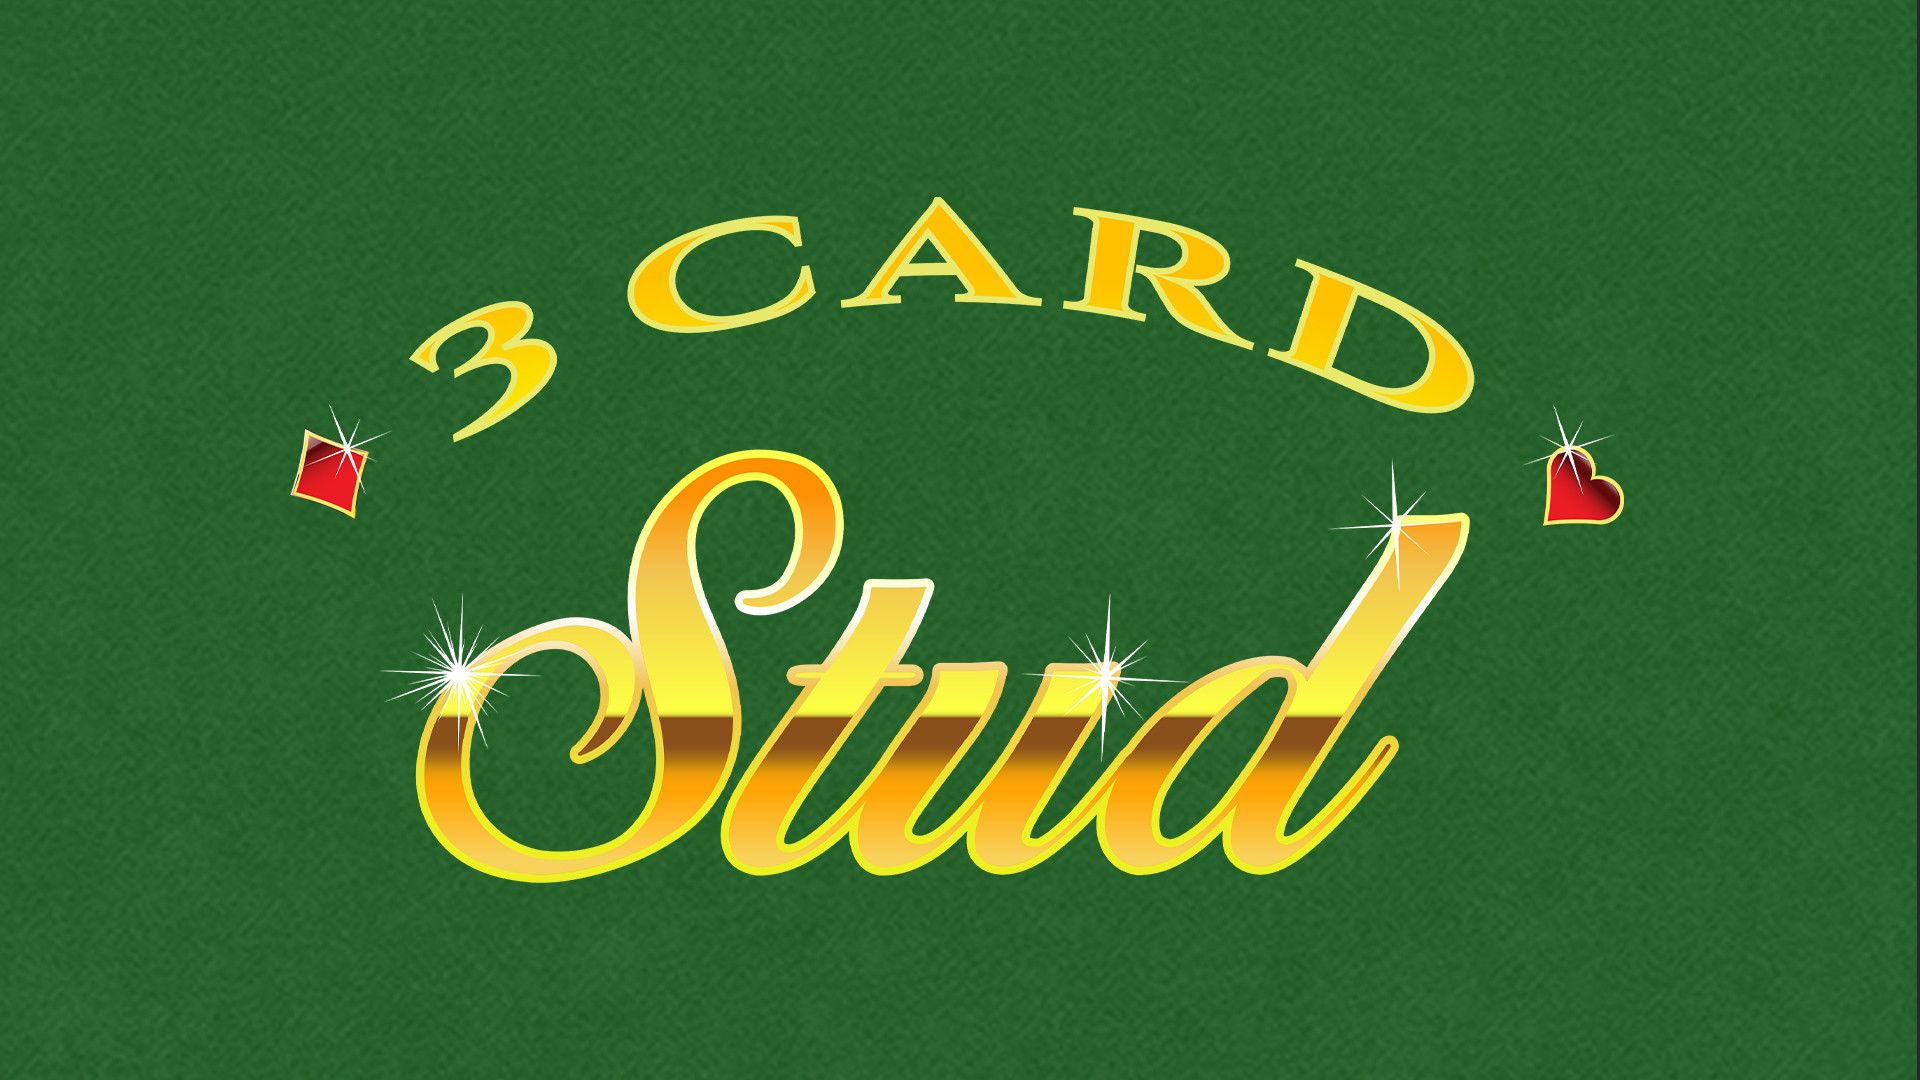 3 Card Stud